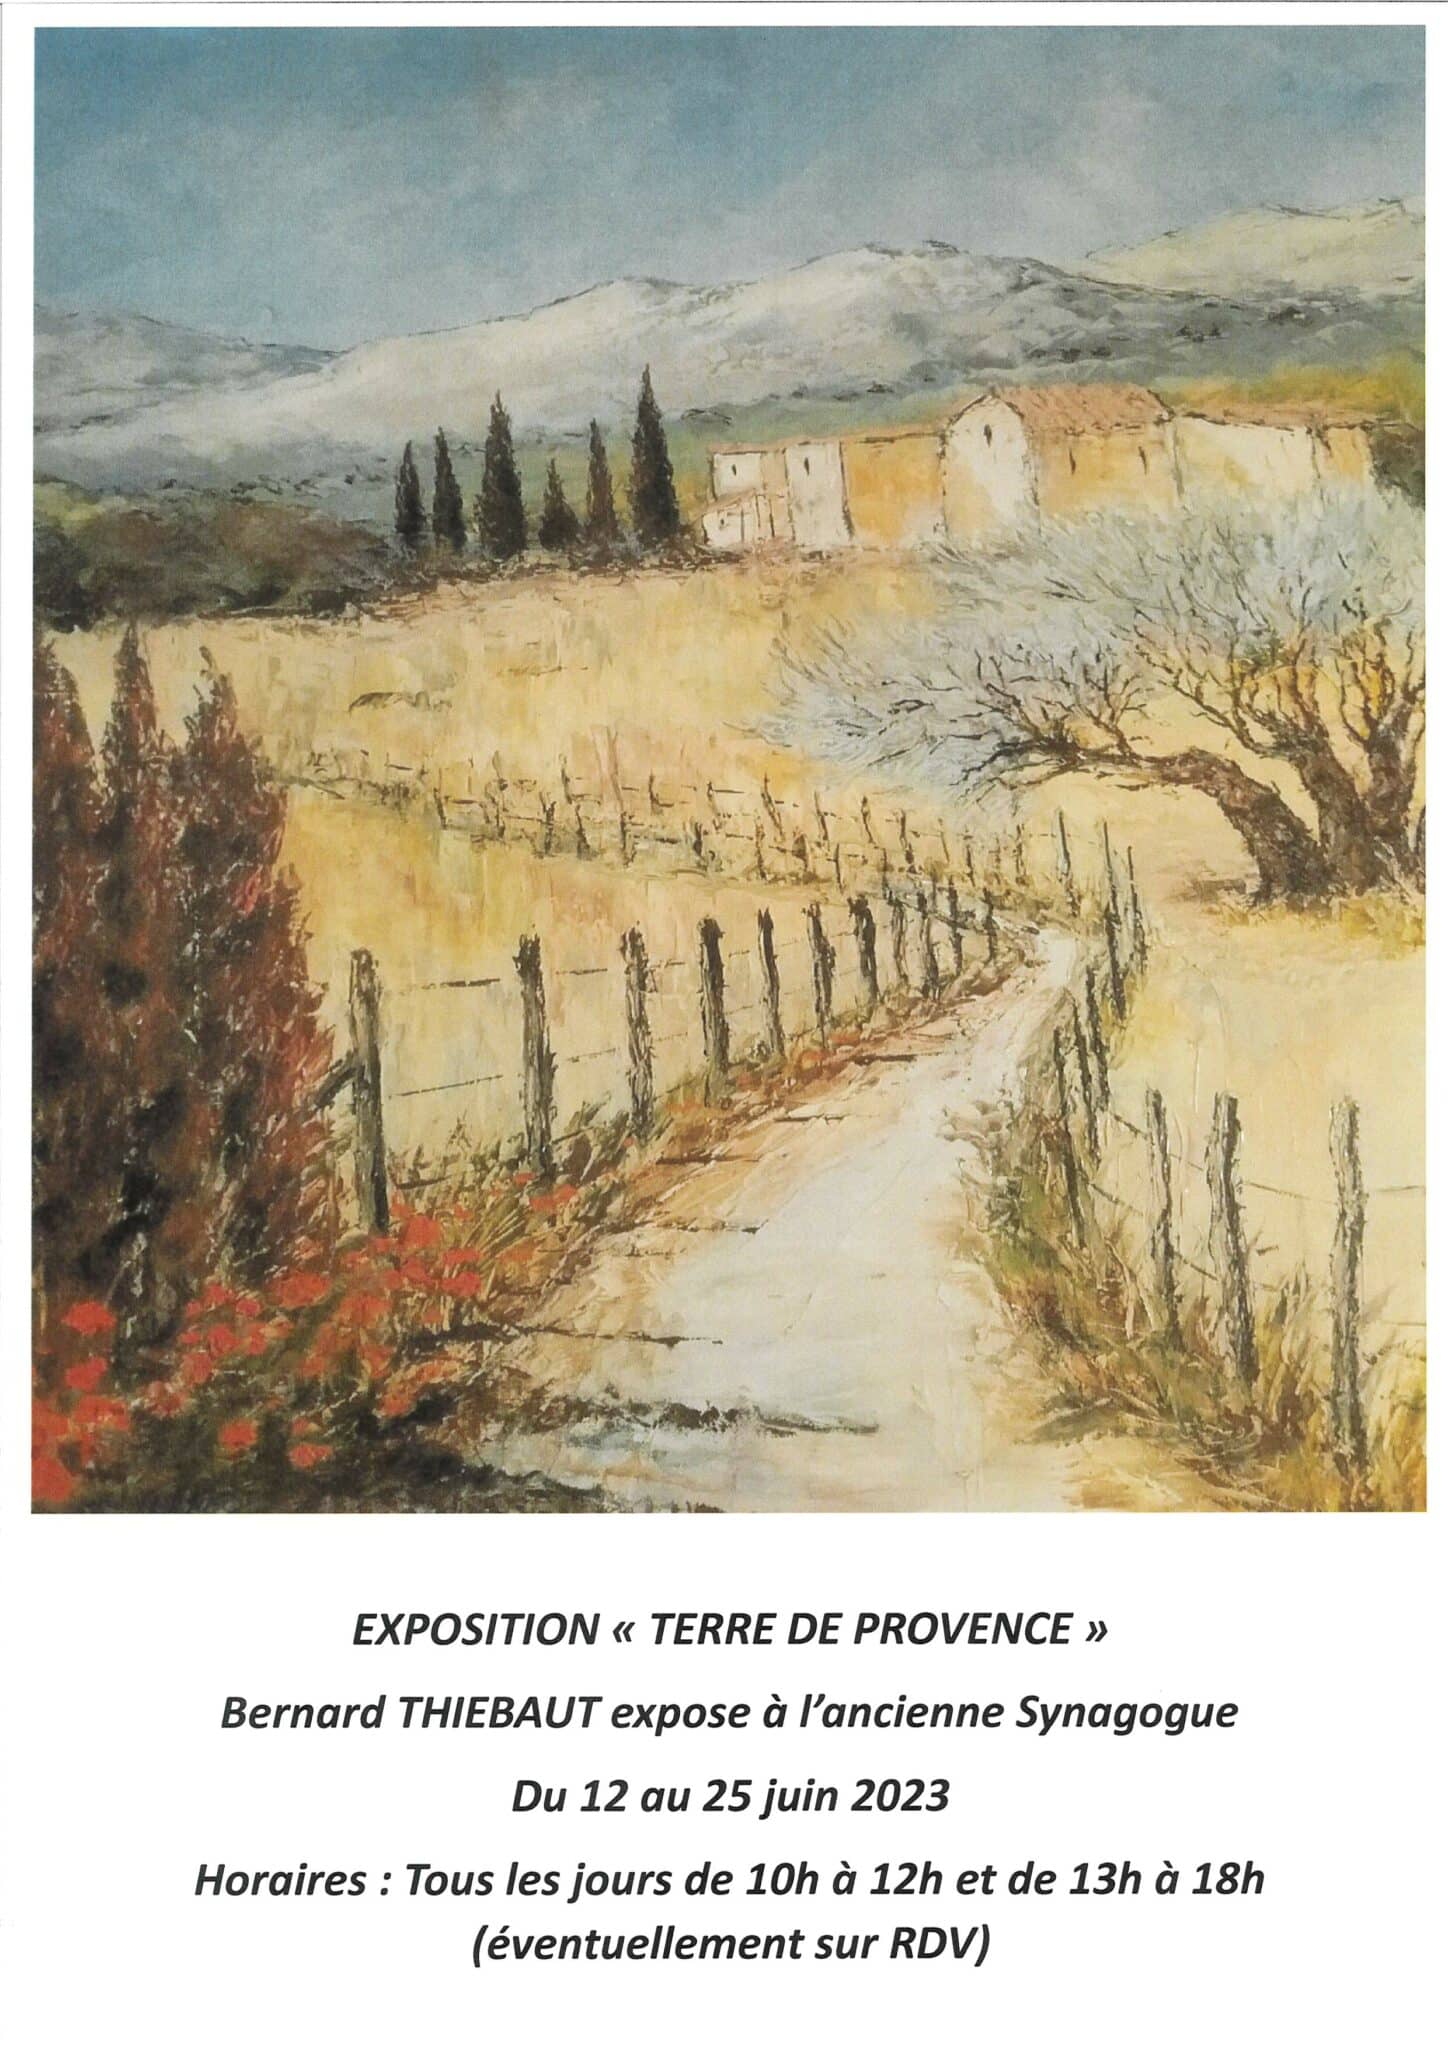 Exposition « Terre de Provence » du 12 au 25 juin à l’ancienne Synagogue